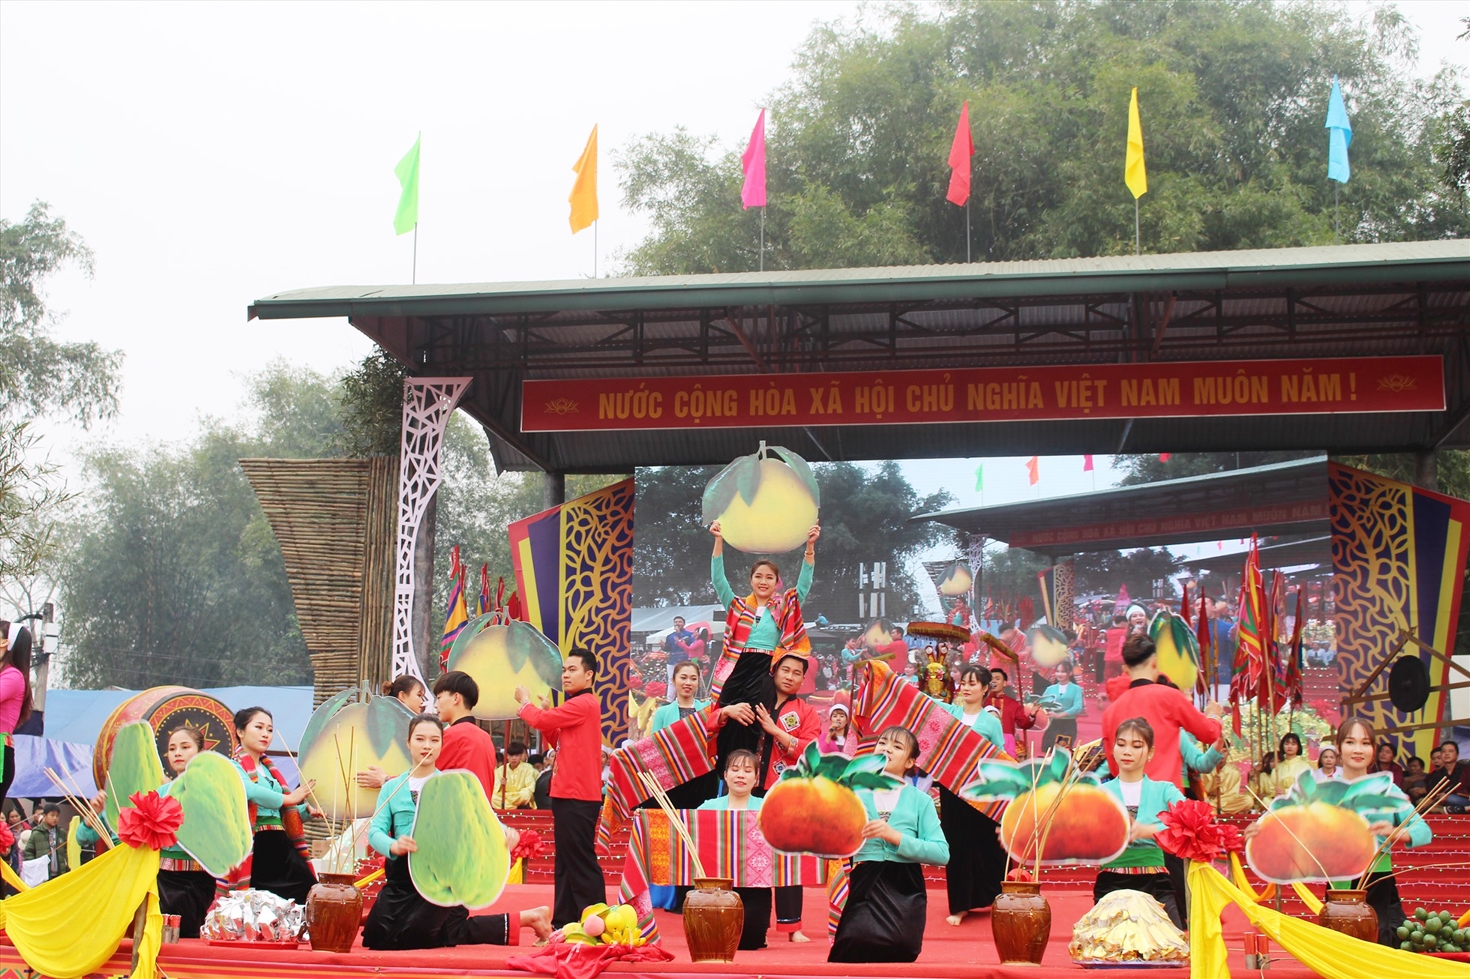 Đây là lễ hội truyền thống đã có từ rất lâu đời và là lễ hội dân gian truyền thống lớn nhất của người Mường tỉnh Hòa Bình